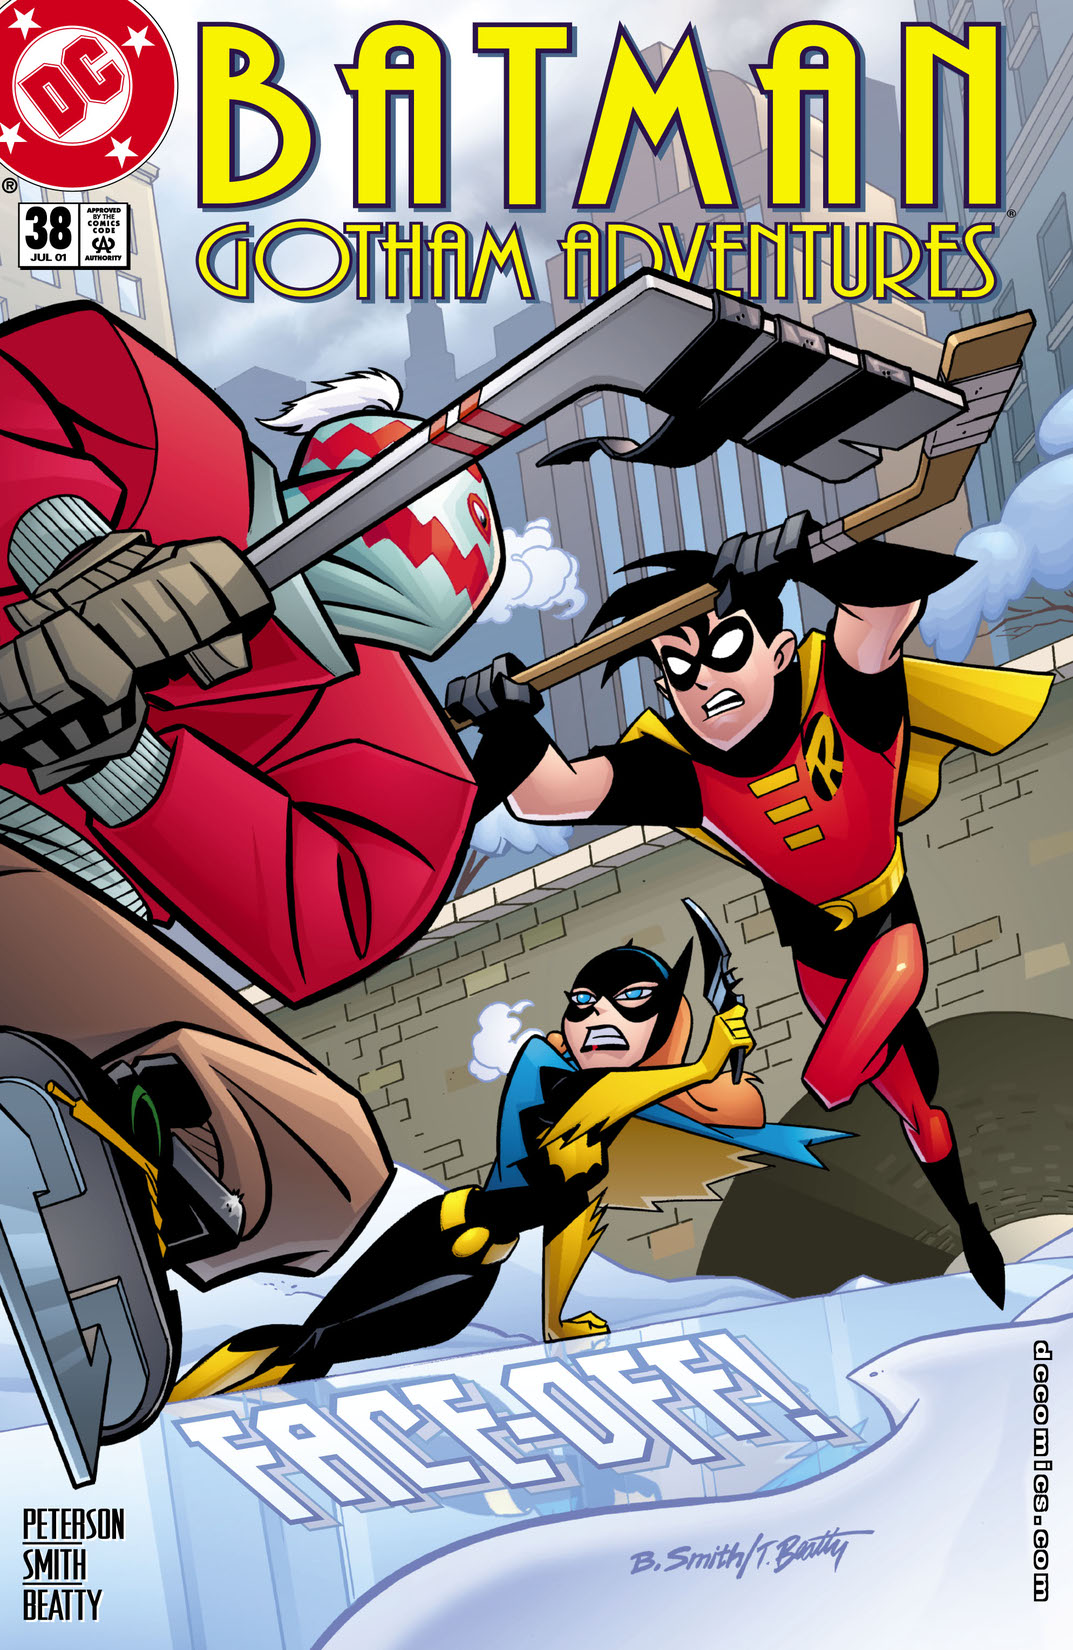 Batman: Gotham Adventures #38 preview images